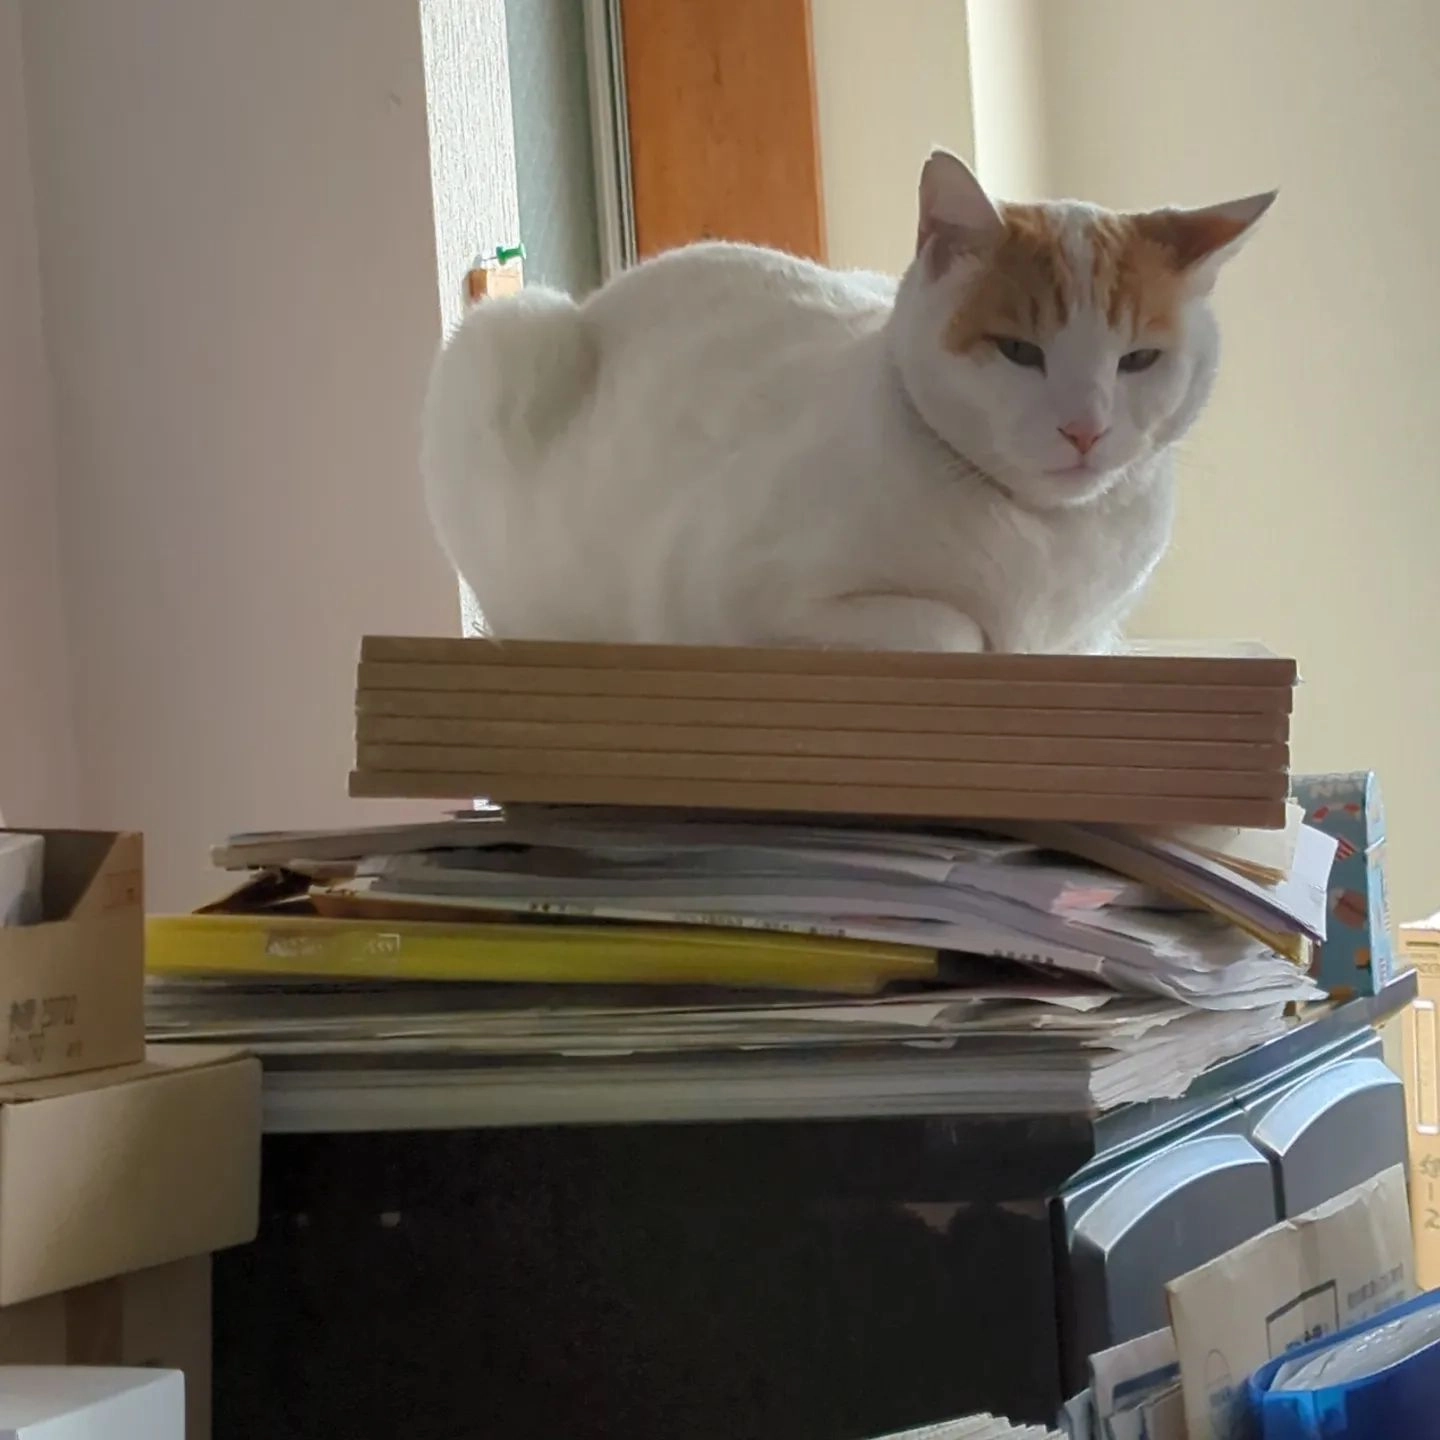 事務所の不安定な場所を好む猫さん。